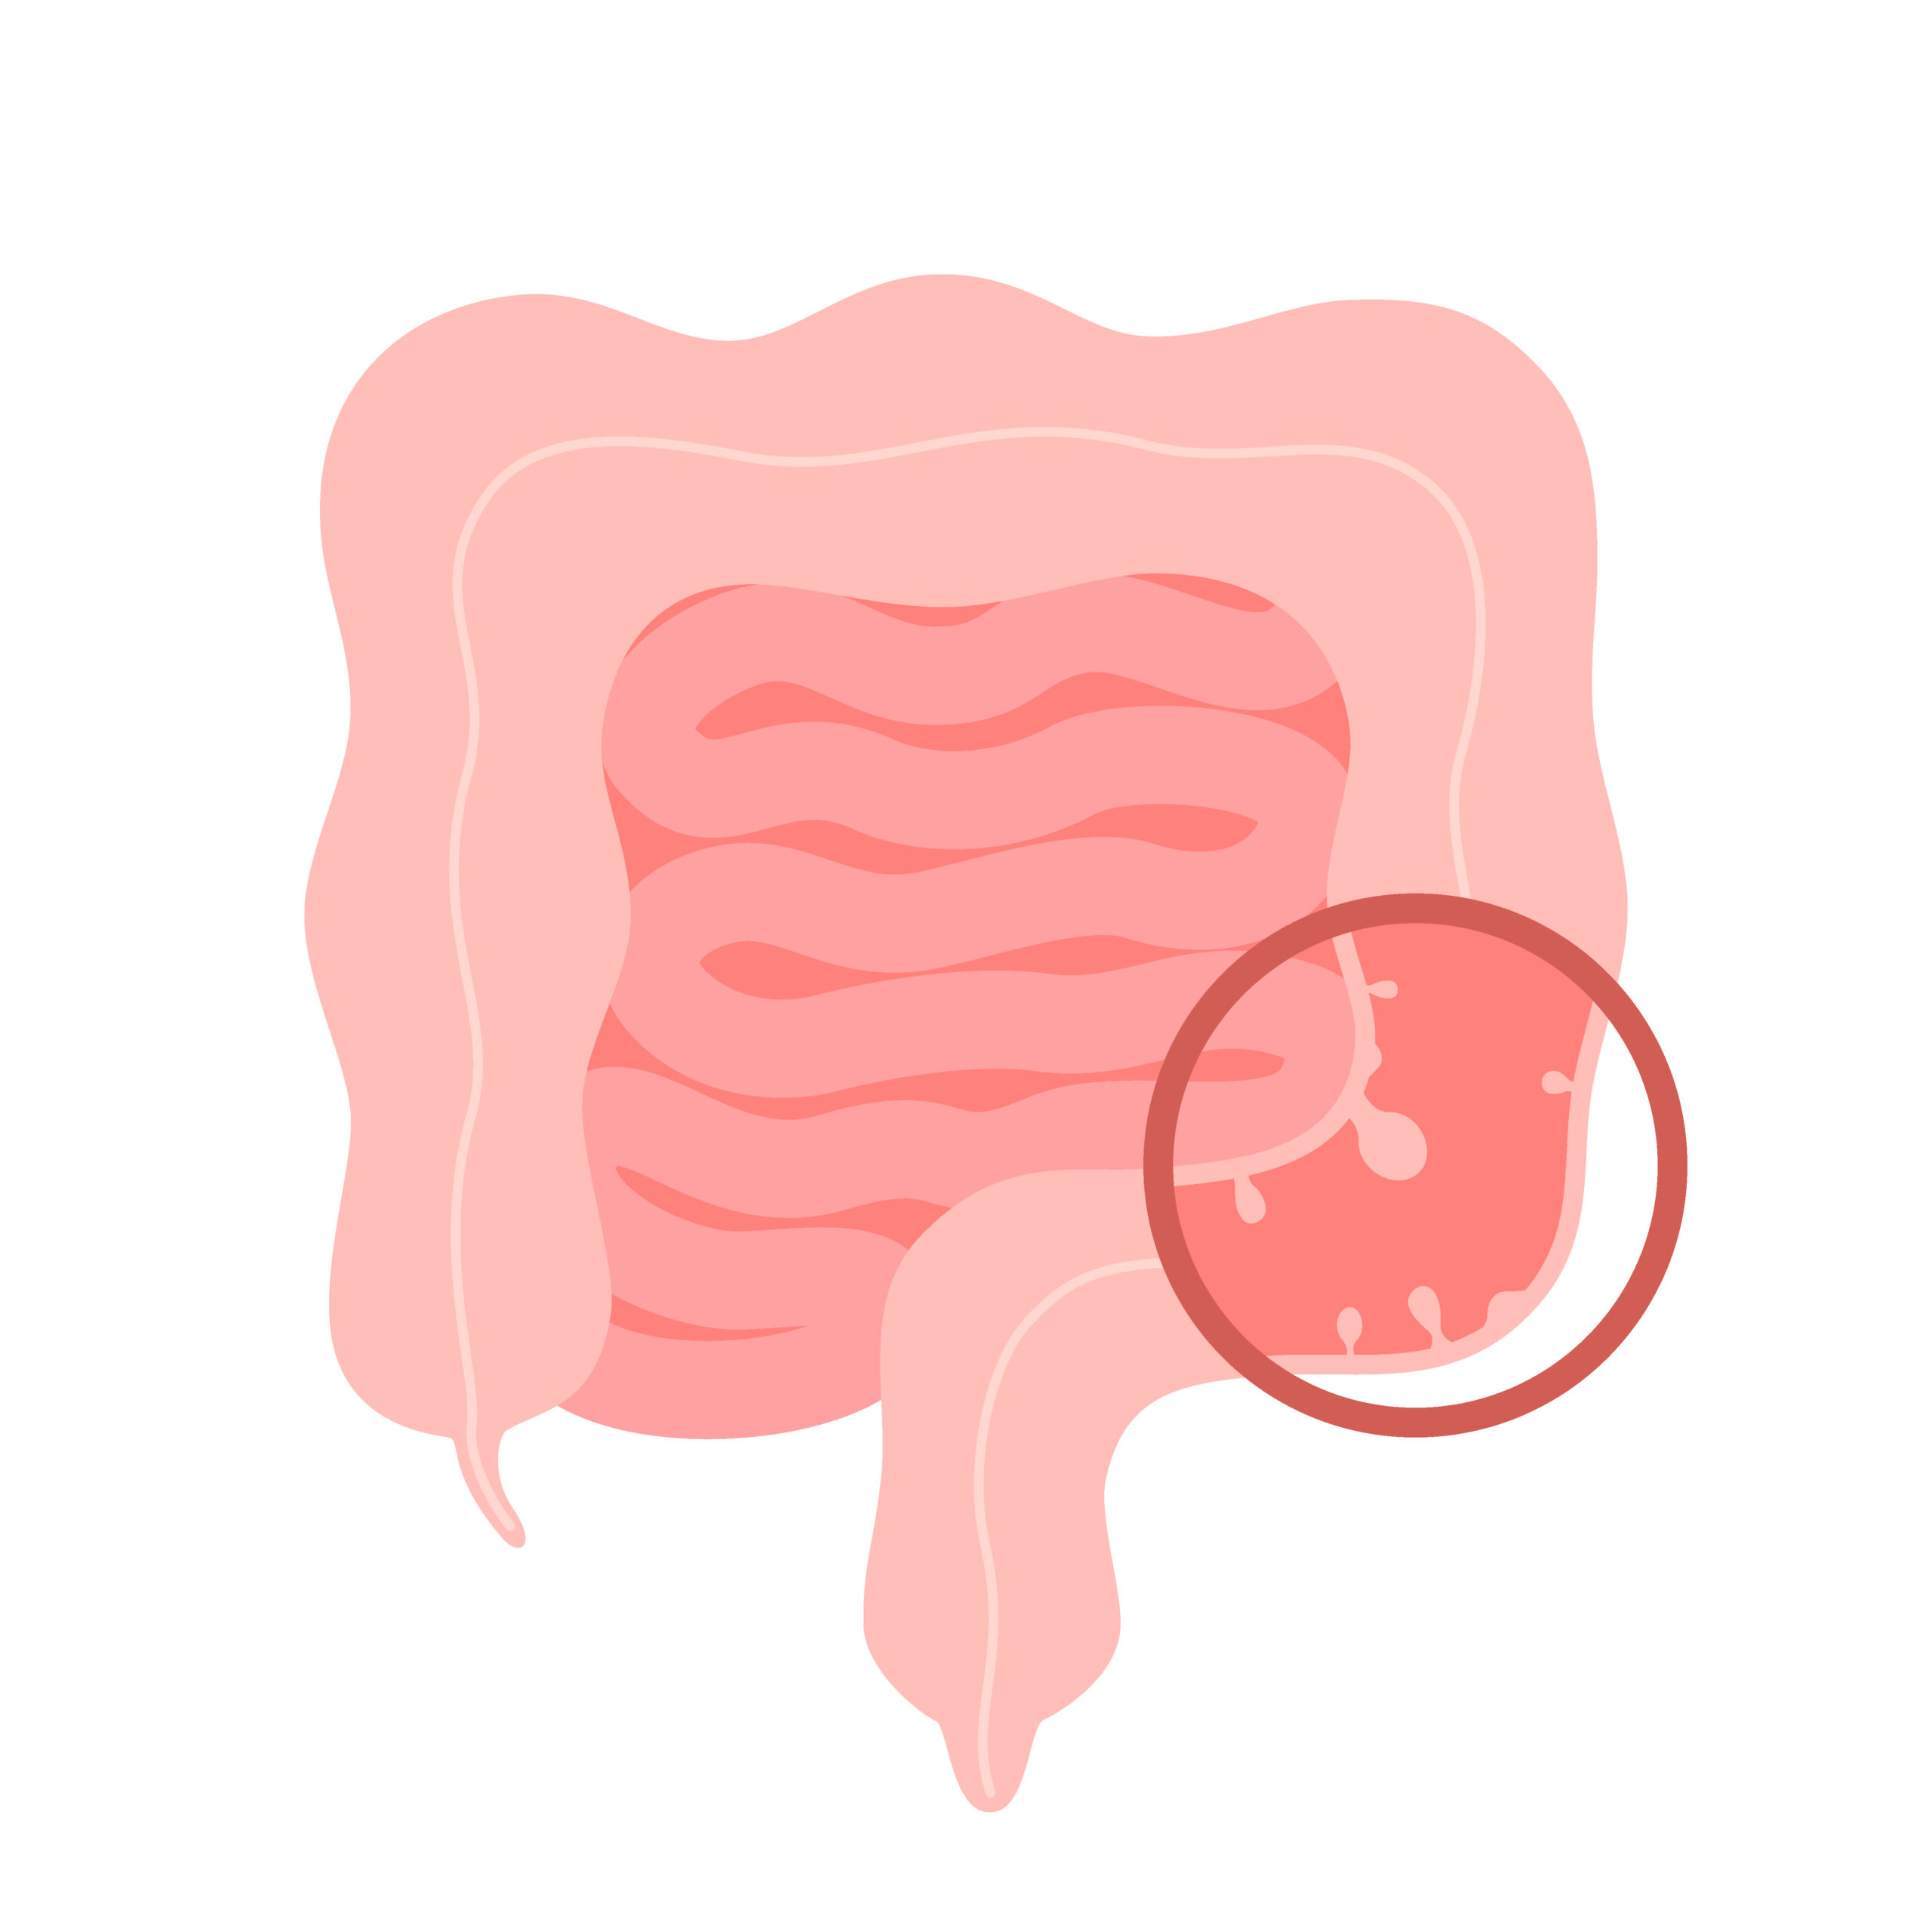 Polypes intestinaux : causes, traitements et prévention